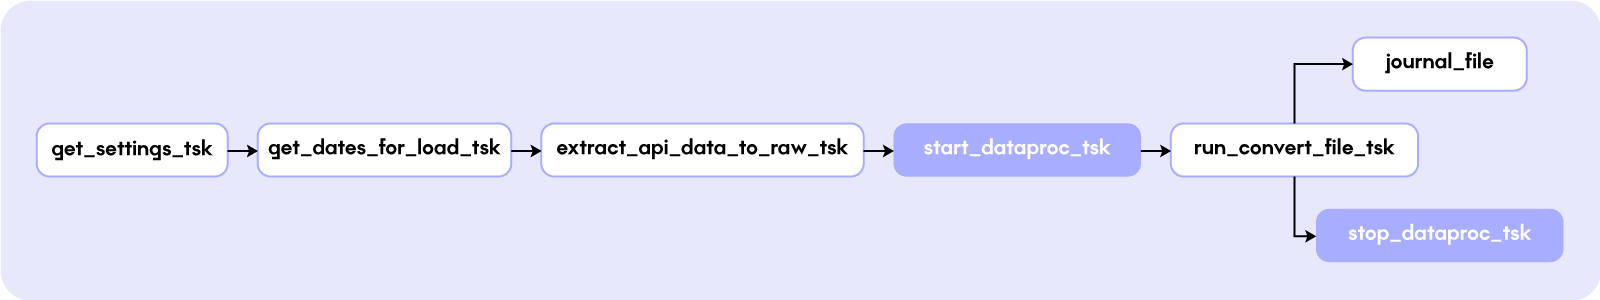 Получаем настройки -> Вычисляем даты, которые нужно загрузить -> Загружаем из API в S3 RAW бакет -> Поднимаем Data Proc -> Запускаем Spark джоб конвертации -> [Сохраняем в БД список загруженных файлов, останавливаем Data proc]